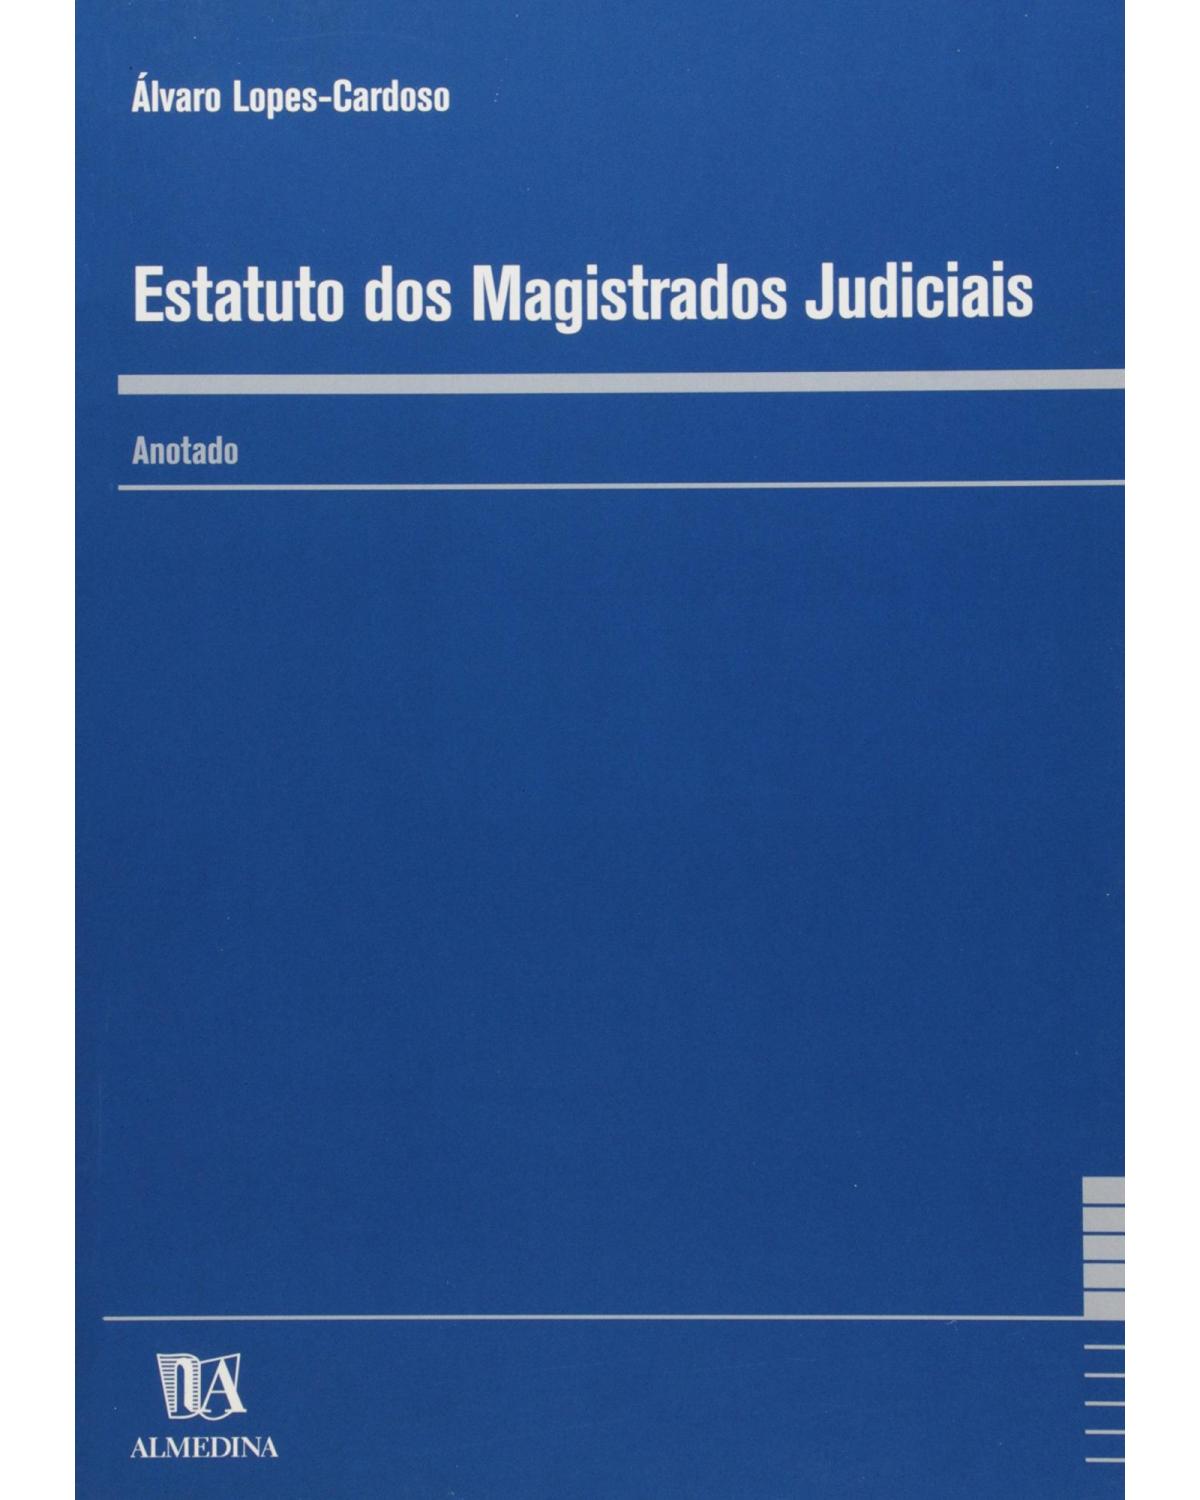 Estatuto dos magistrados judiciais - anotado - 1ª Edição | 2000